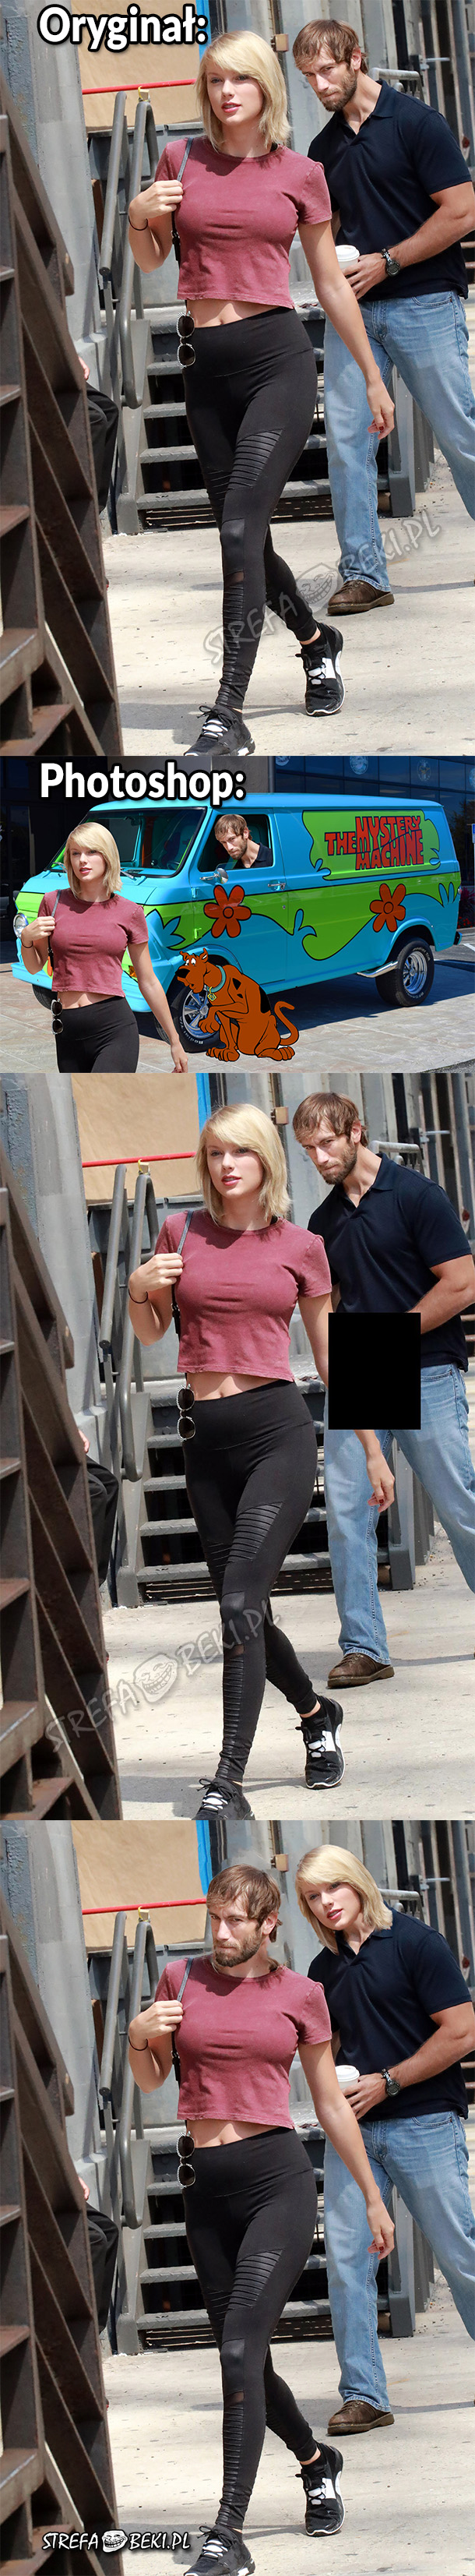 Taylor Swift i mistrzowie photoshopa